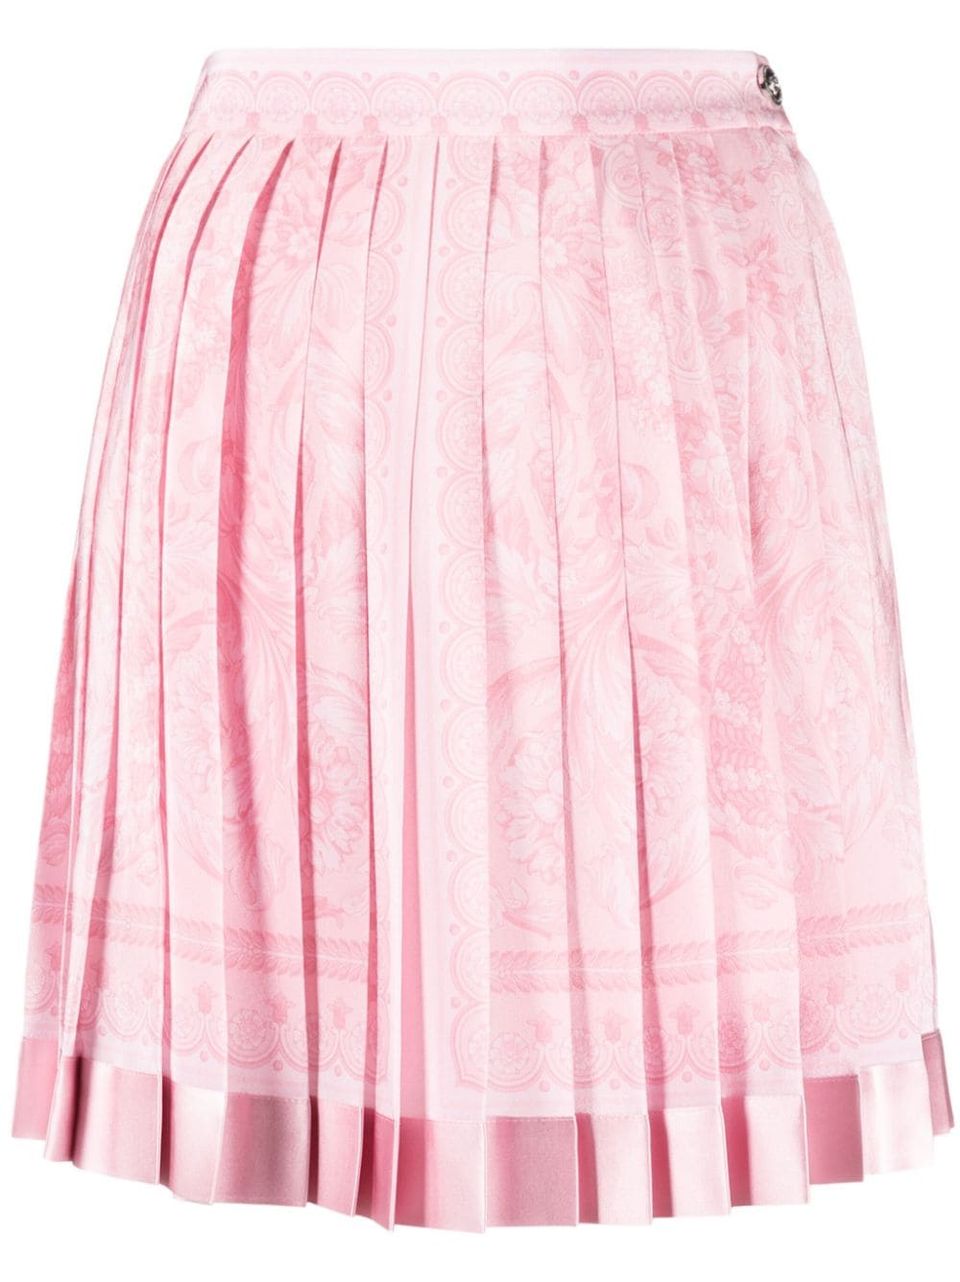 Barocco print skirt